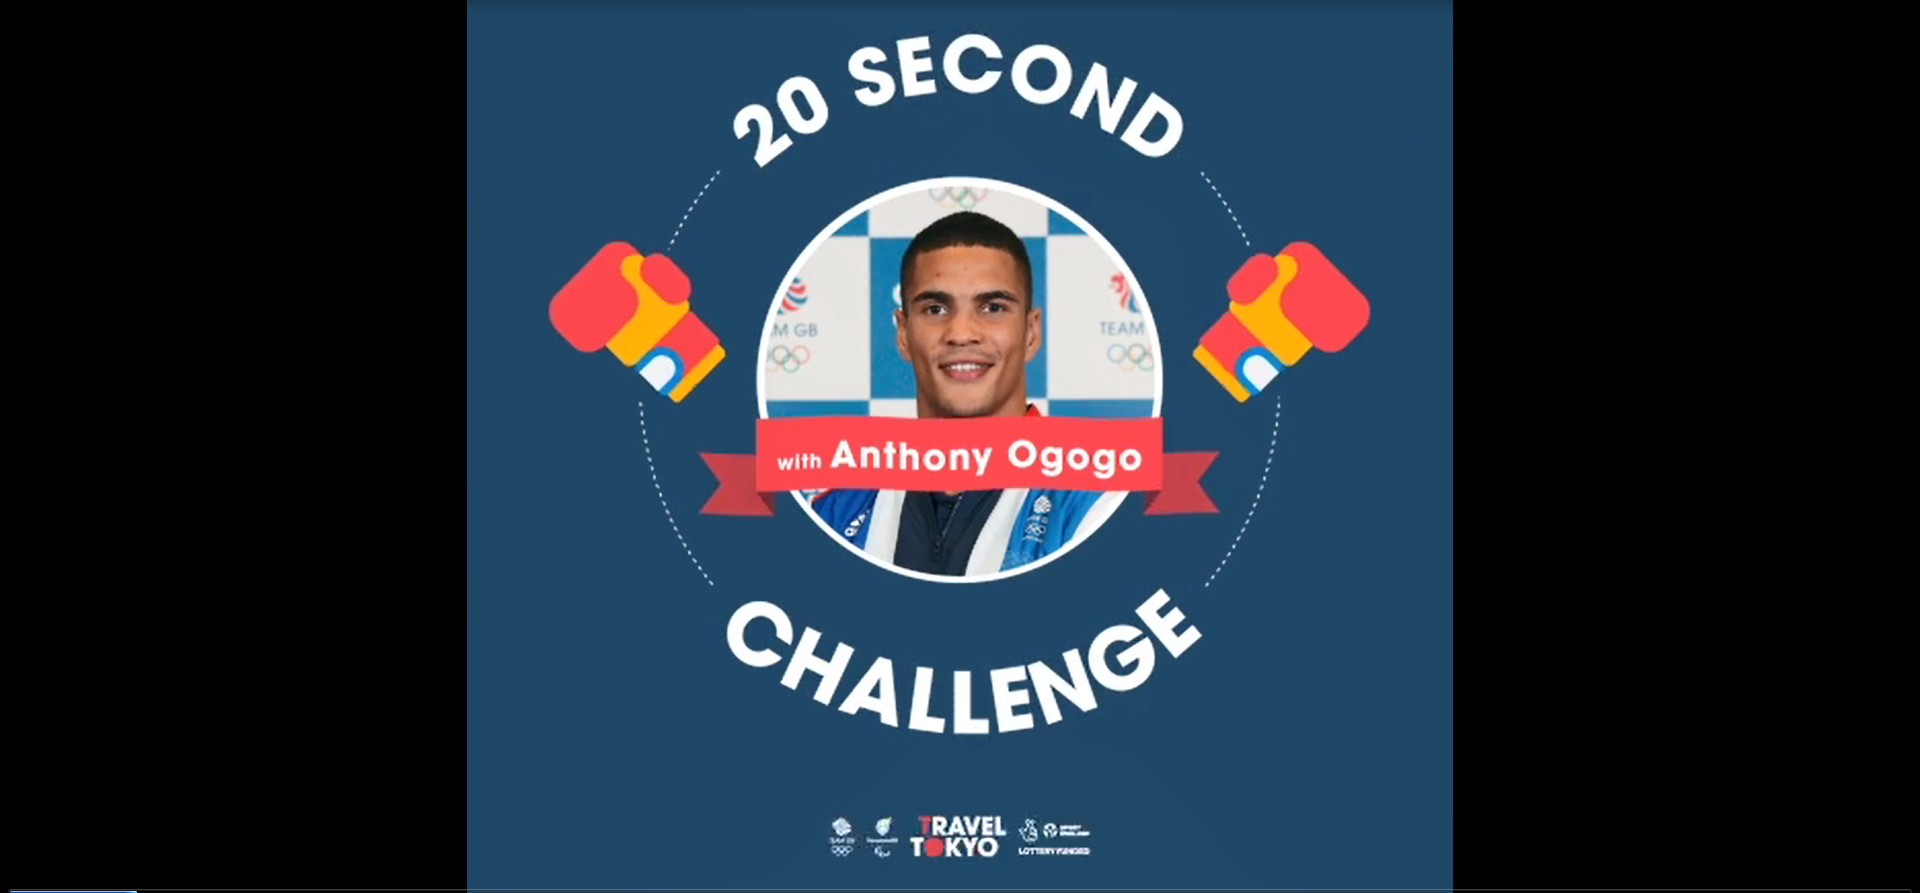 Anthony Ogogo's challenge